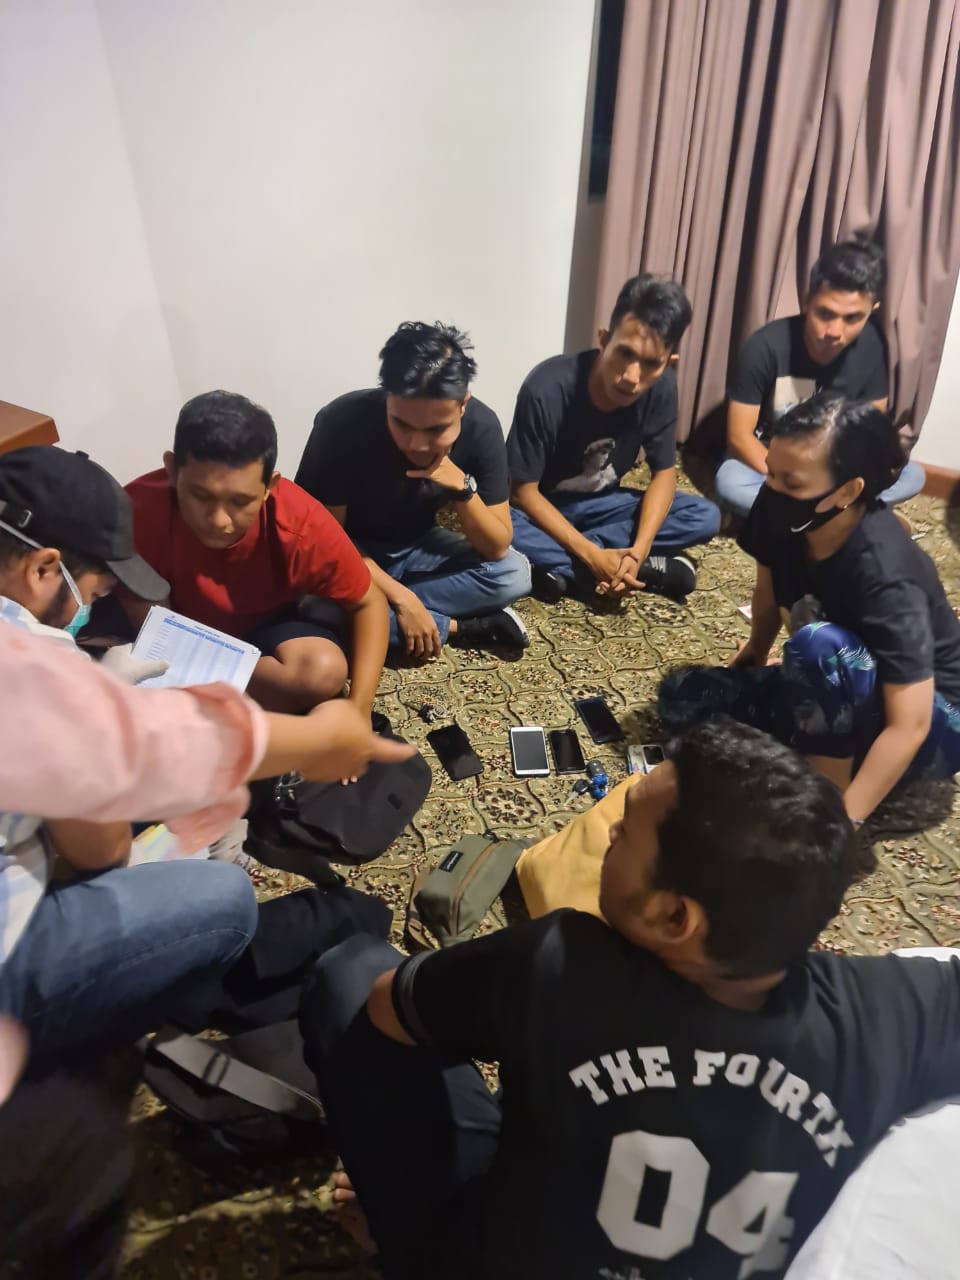 Polisi Kembali Amankan 17 Orang Diduga Pesta Narkoba di Hotel Pangeran